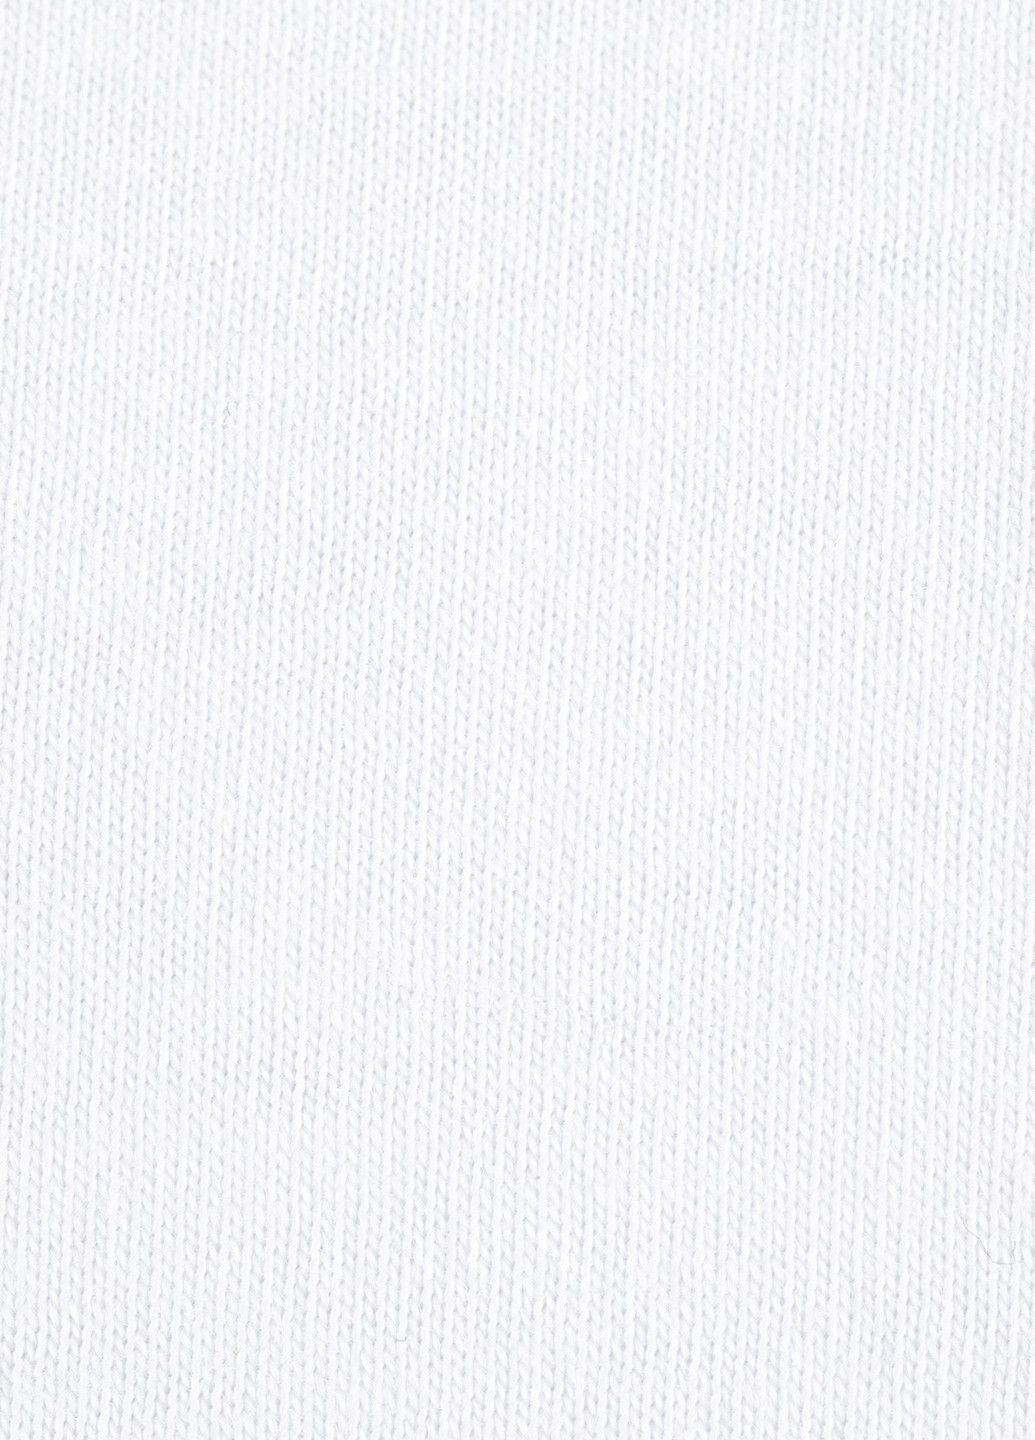 Белая футболка Tommy Hilfiger